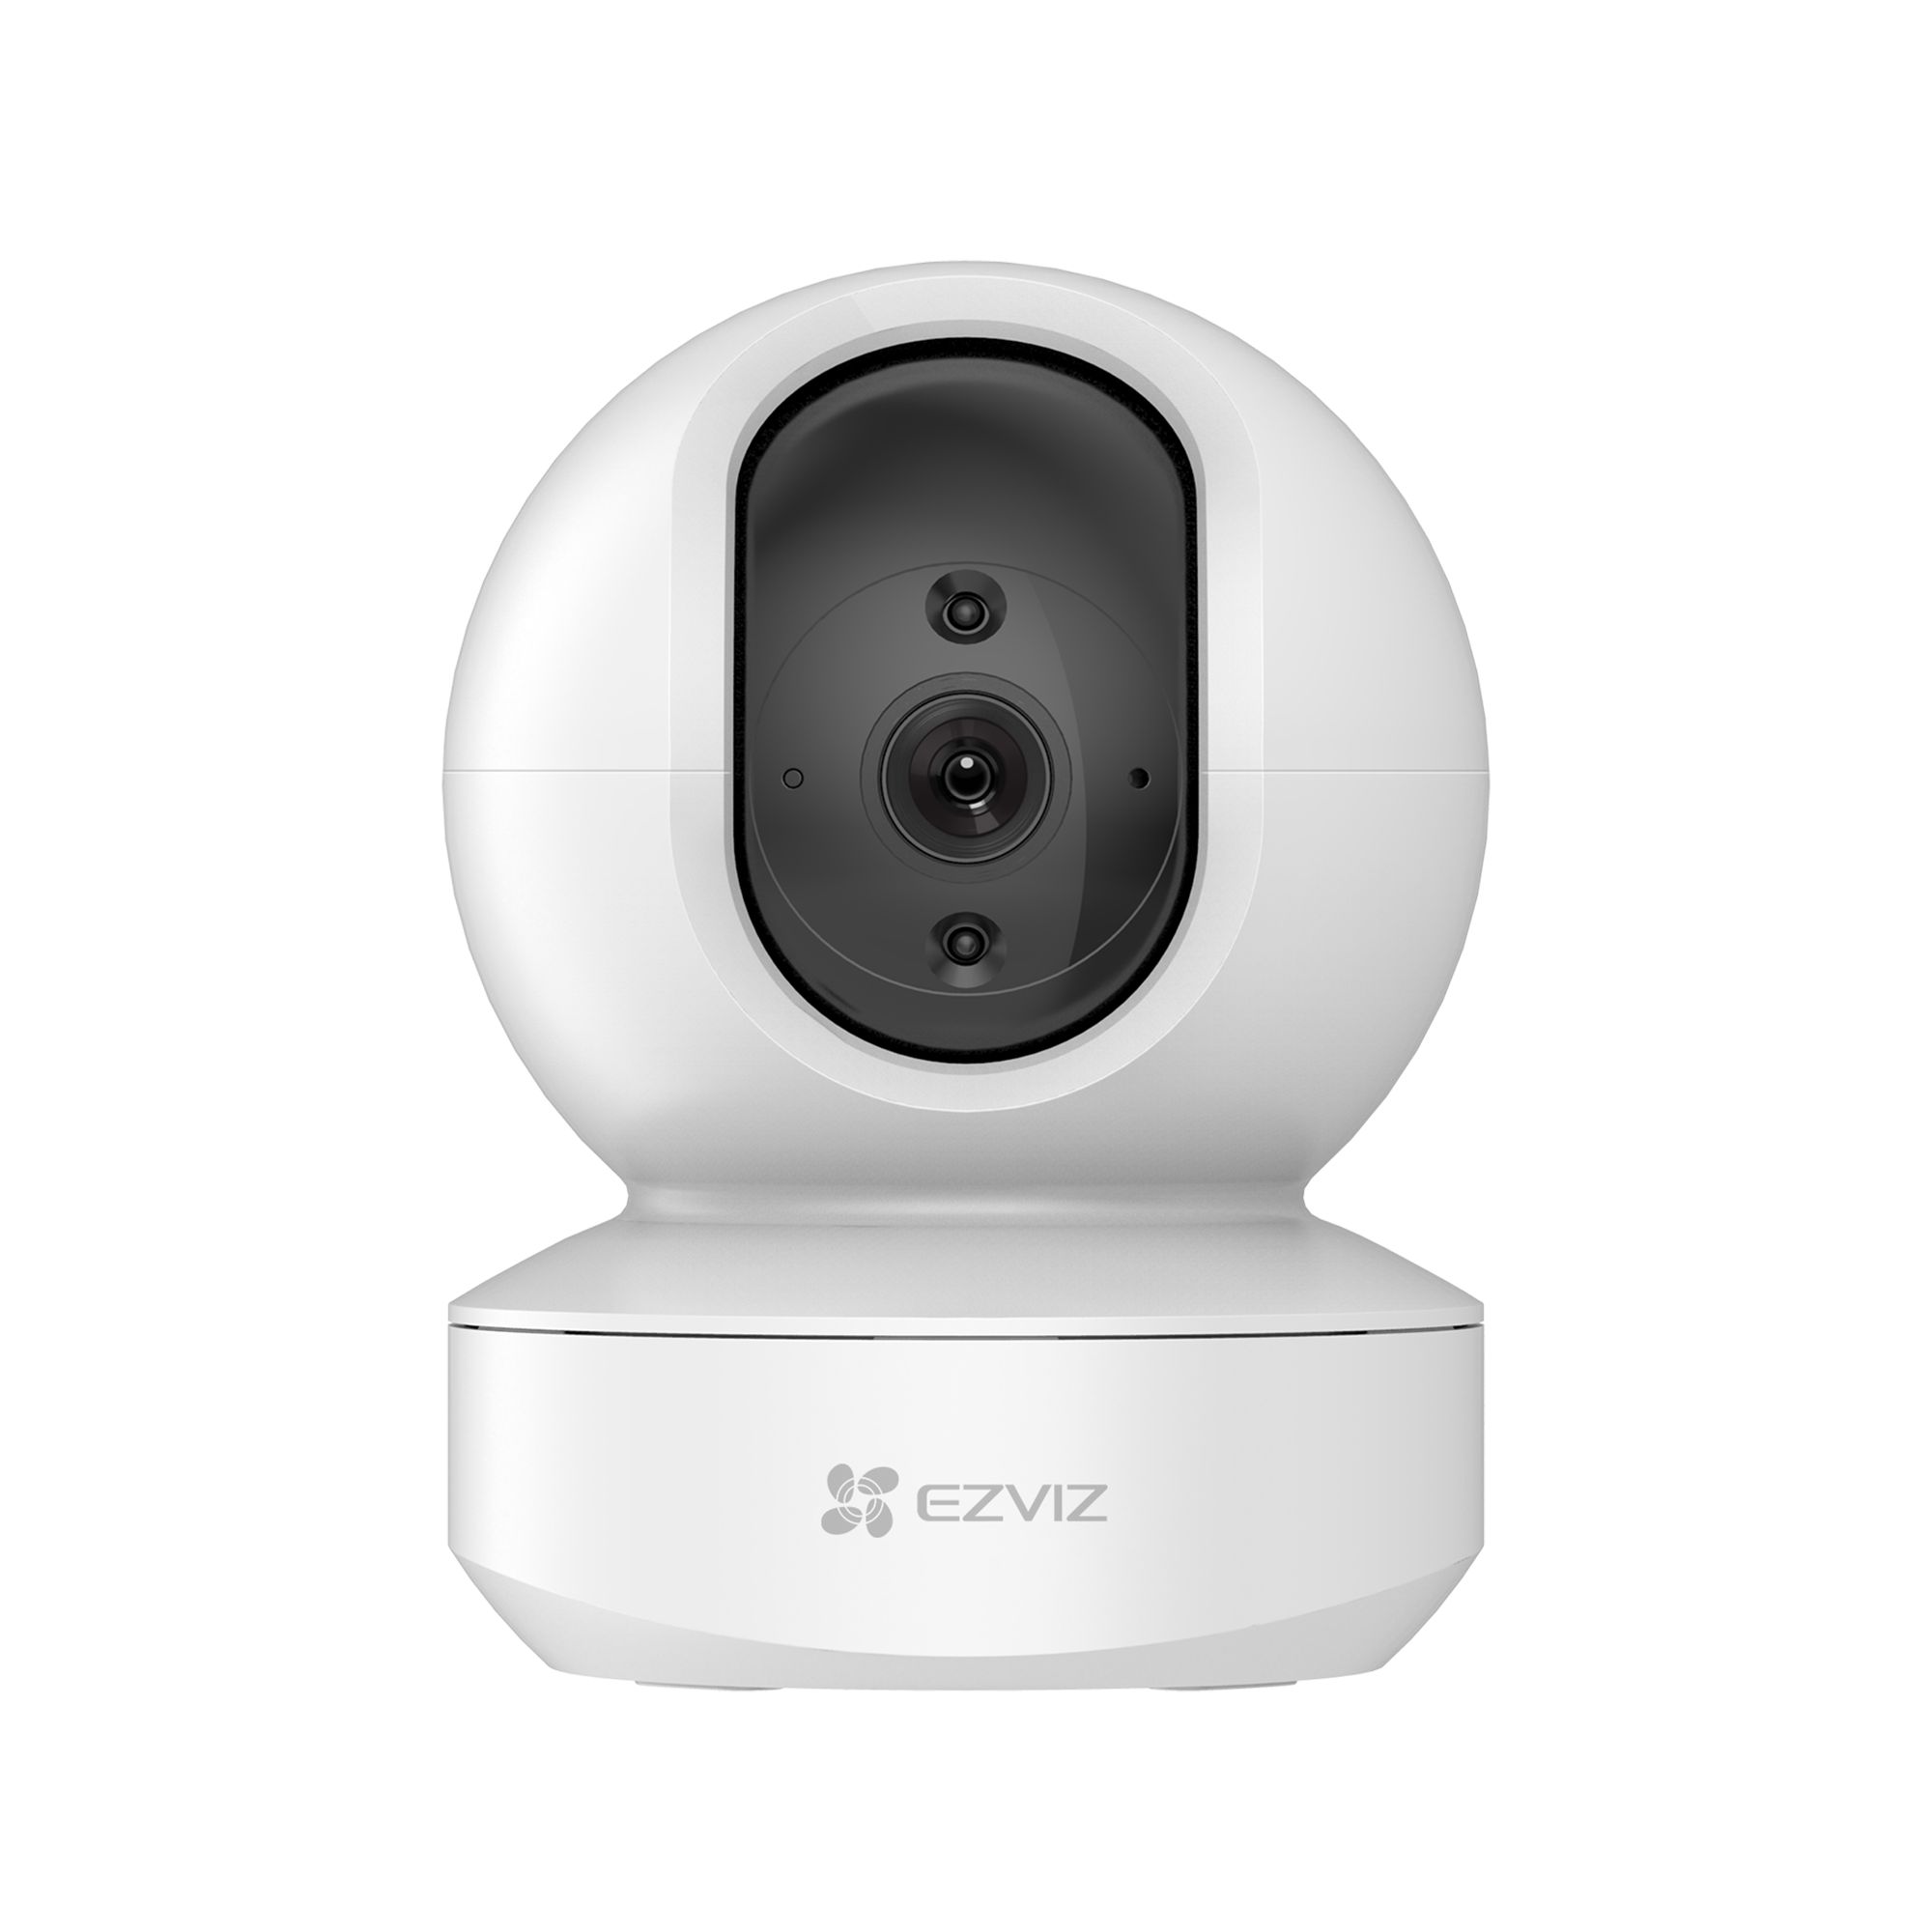 EZVIZ TY1 Wireless Indoor Pan & tilt Smart camera in White